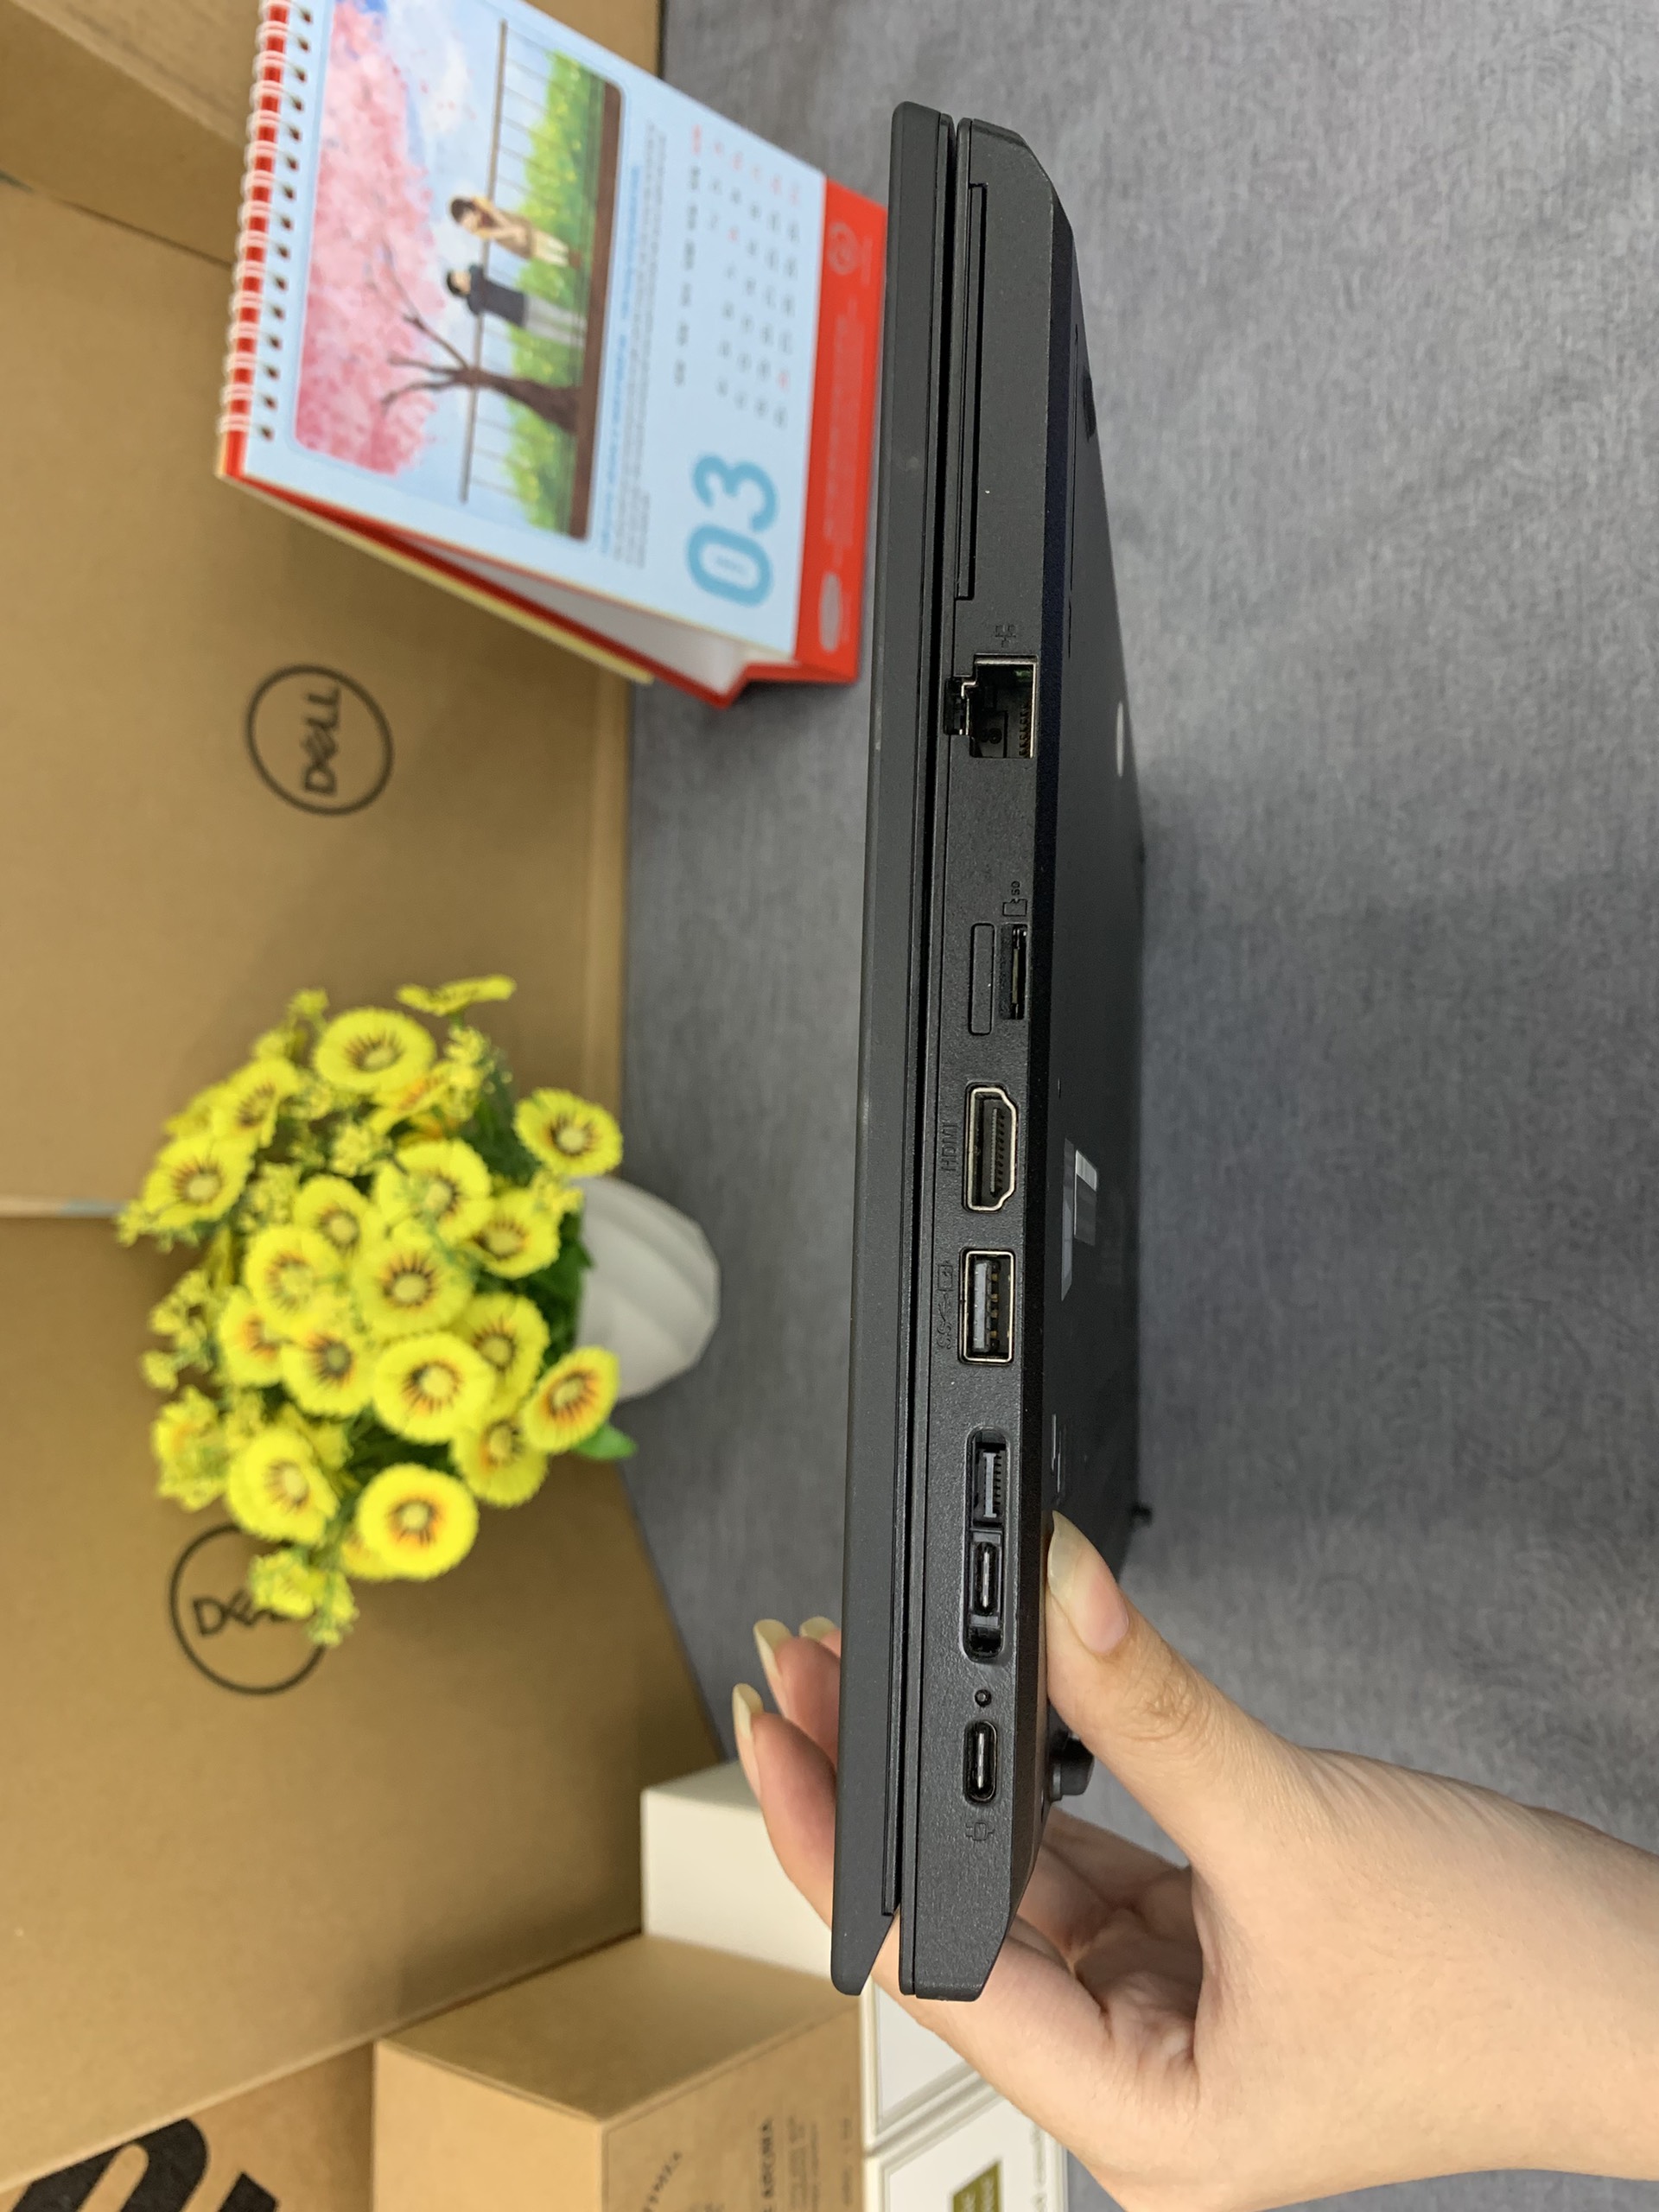 ThinkPad L480